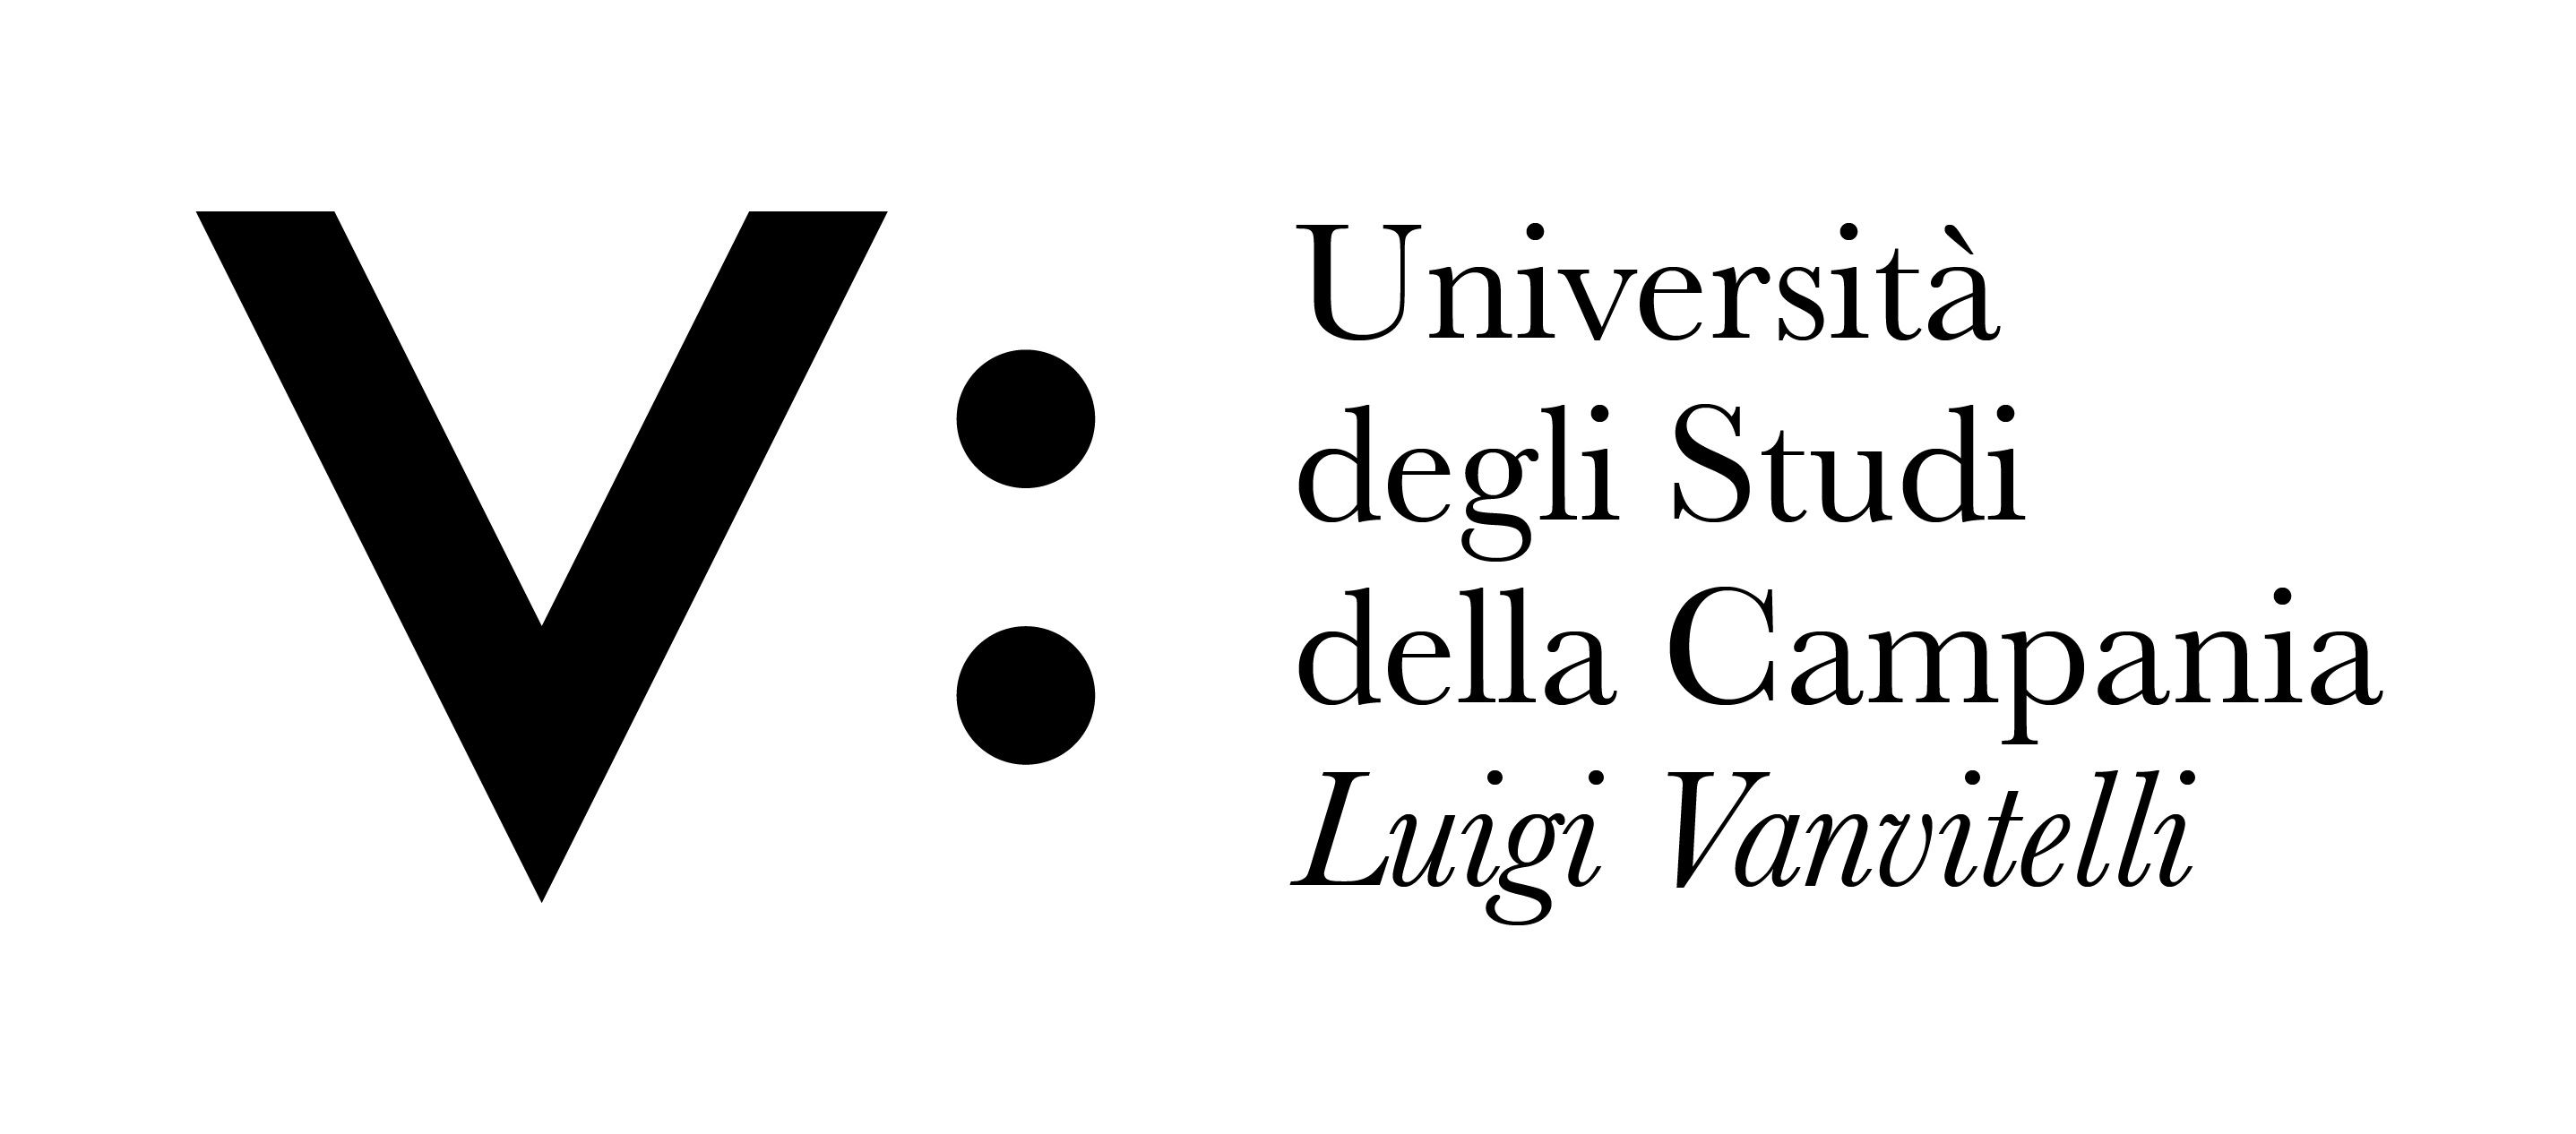 V_Università Vanvitelli_Logo_pos